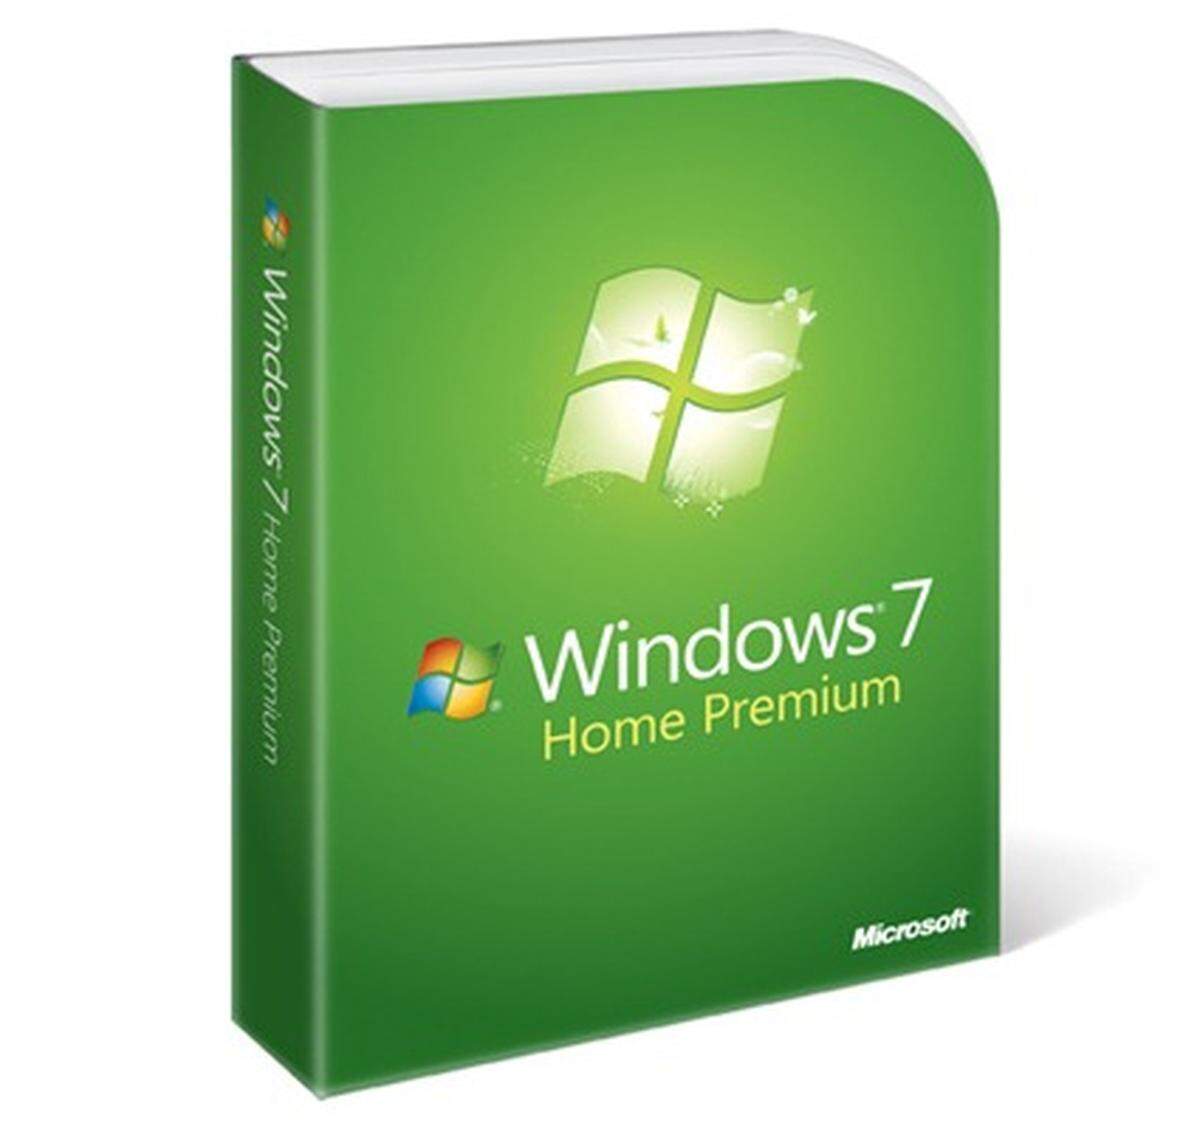 Heute erscheint das nächste Betriebssystem von Microsoft. Windows 7 ist in aller Munde und wird als das bessere Windows Vista gefeiert. Das hat Microsoft auch bitter nötig, denn Vista ist vor allem im Vergleich mit dem Vorgänger XP bei Anwendern und Unternehmen unbeliebt. Mit Windows 7 soll alles besser werden - aber was eigentlich? DiePresse.com hat das fertige System vorab unter die Lupe genommen.